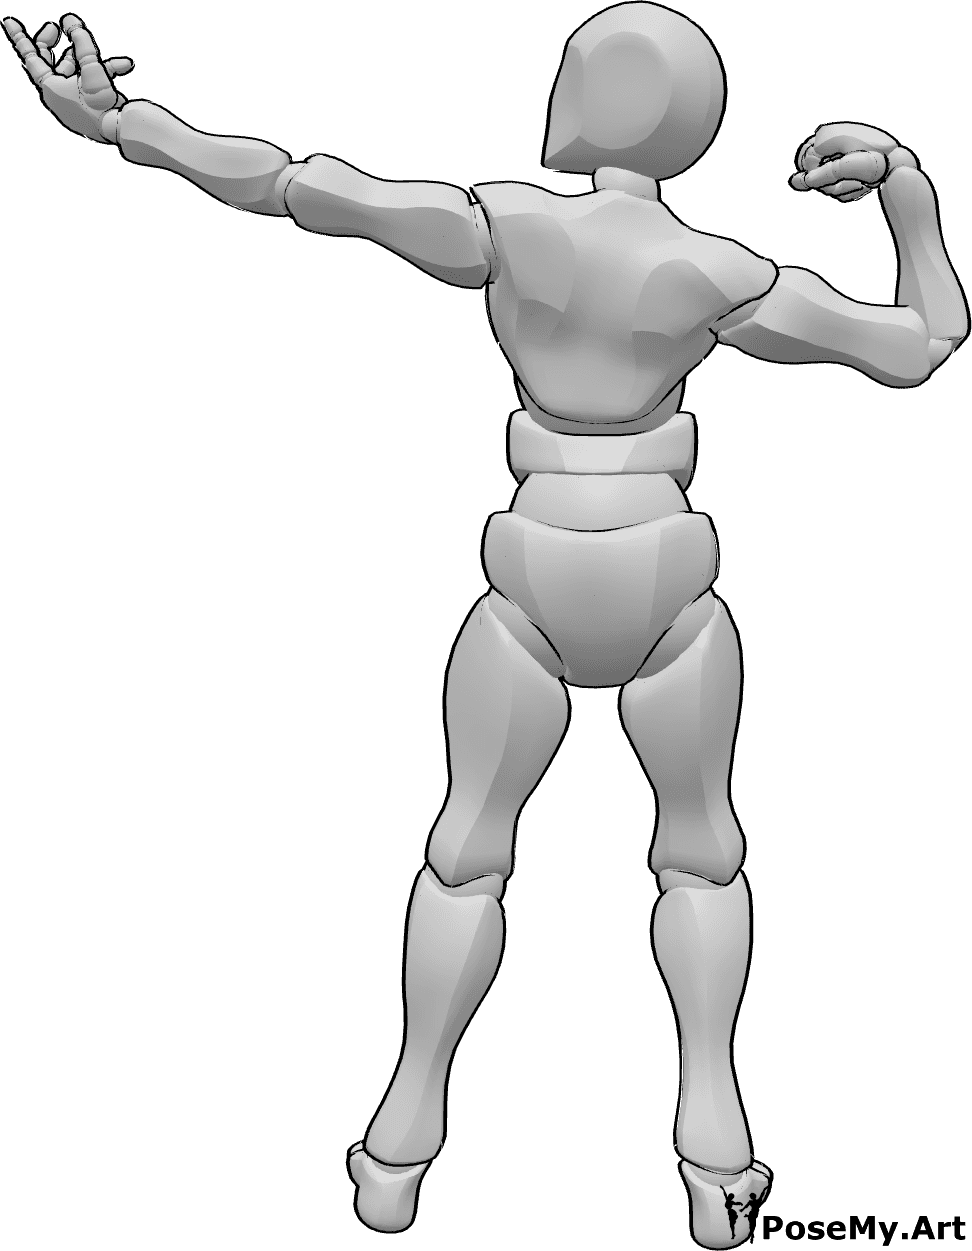 Referencia de poses- Postura de músculos masculinos - Masculino mostrando su musculatura posa